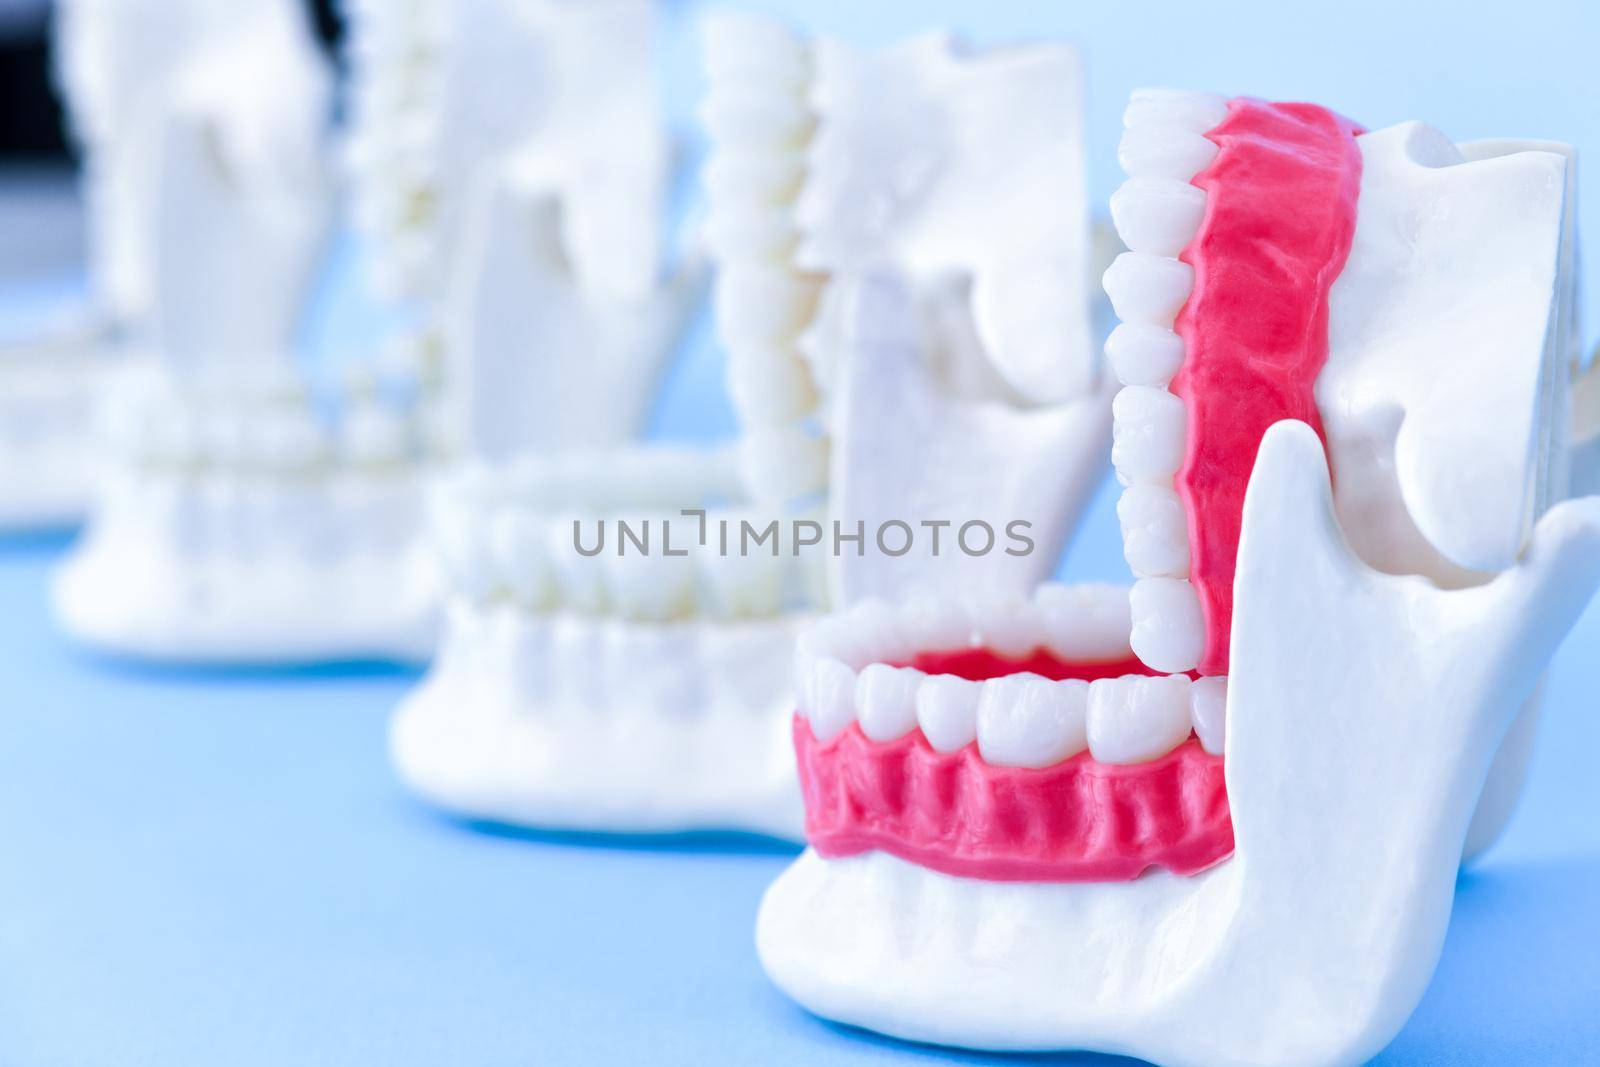 Dentist orthodontic teeth models by dotshock